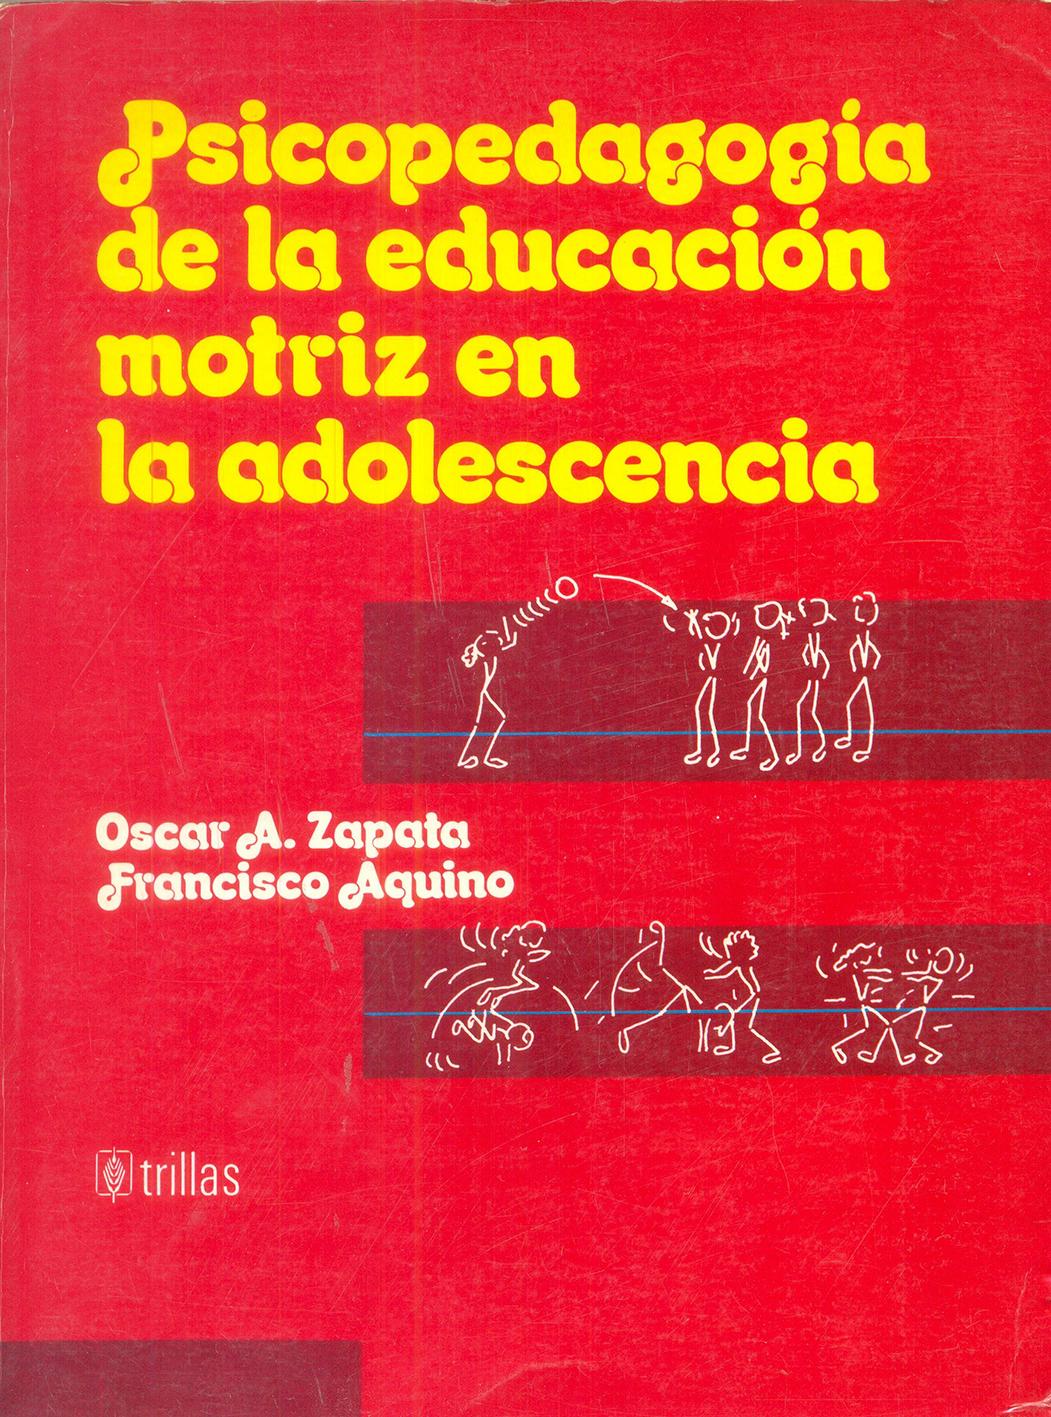 PSICOPEDAGOGÍA DE LA EDUCACIÓN MOTRIZ EN LA ADOLESCENCIA. Zapata, O y Aquino, F.